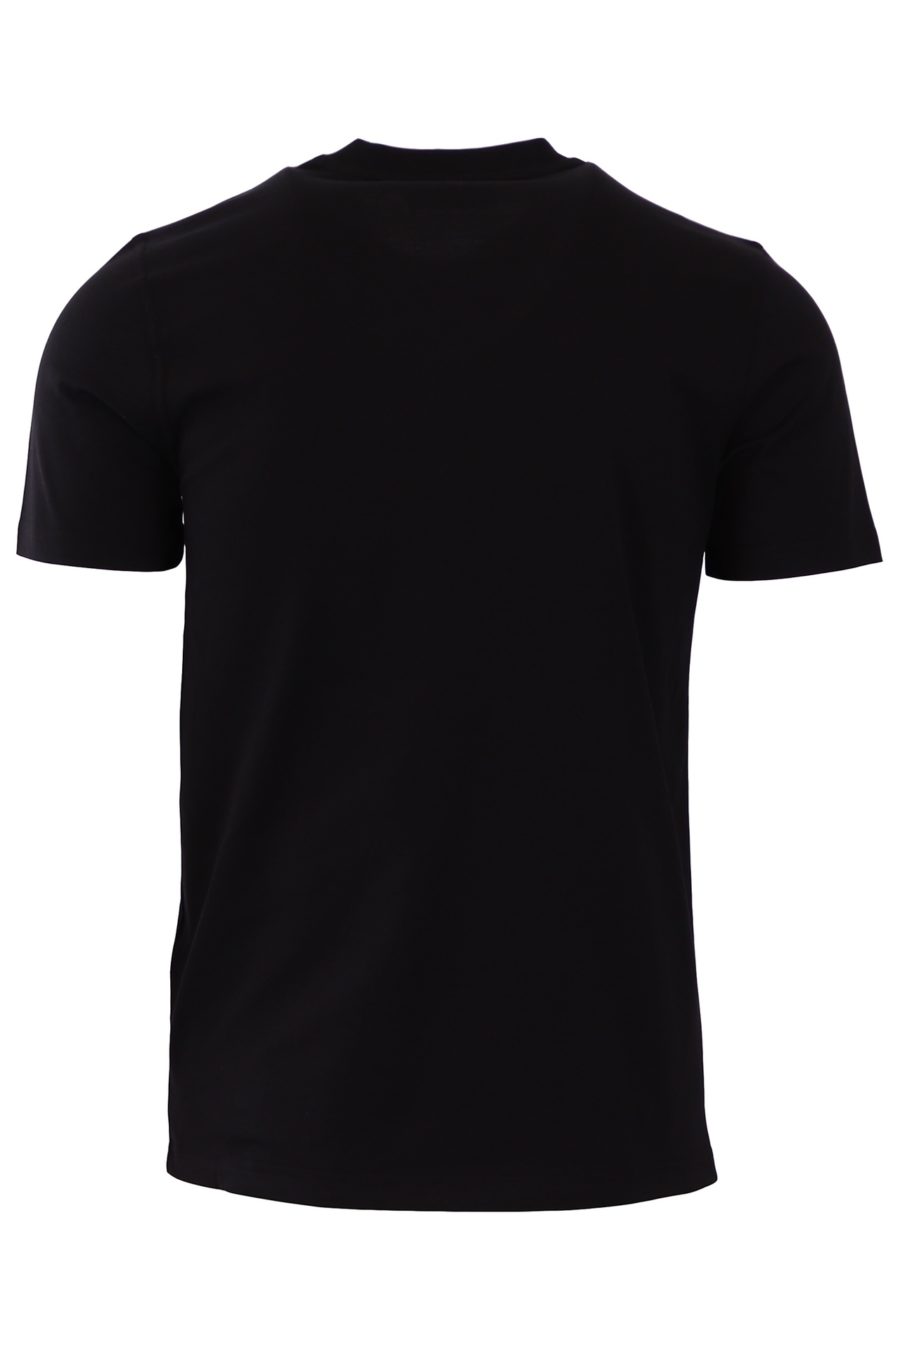 Camiseta Givenchy negra slim fit logo bordado - 226615662ae4afde66042db4cc7ae3e6c5a0d9d7